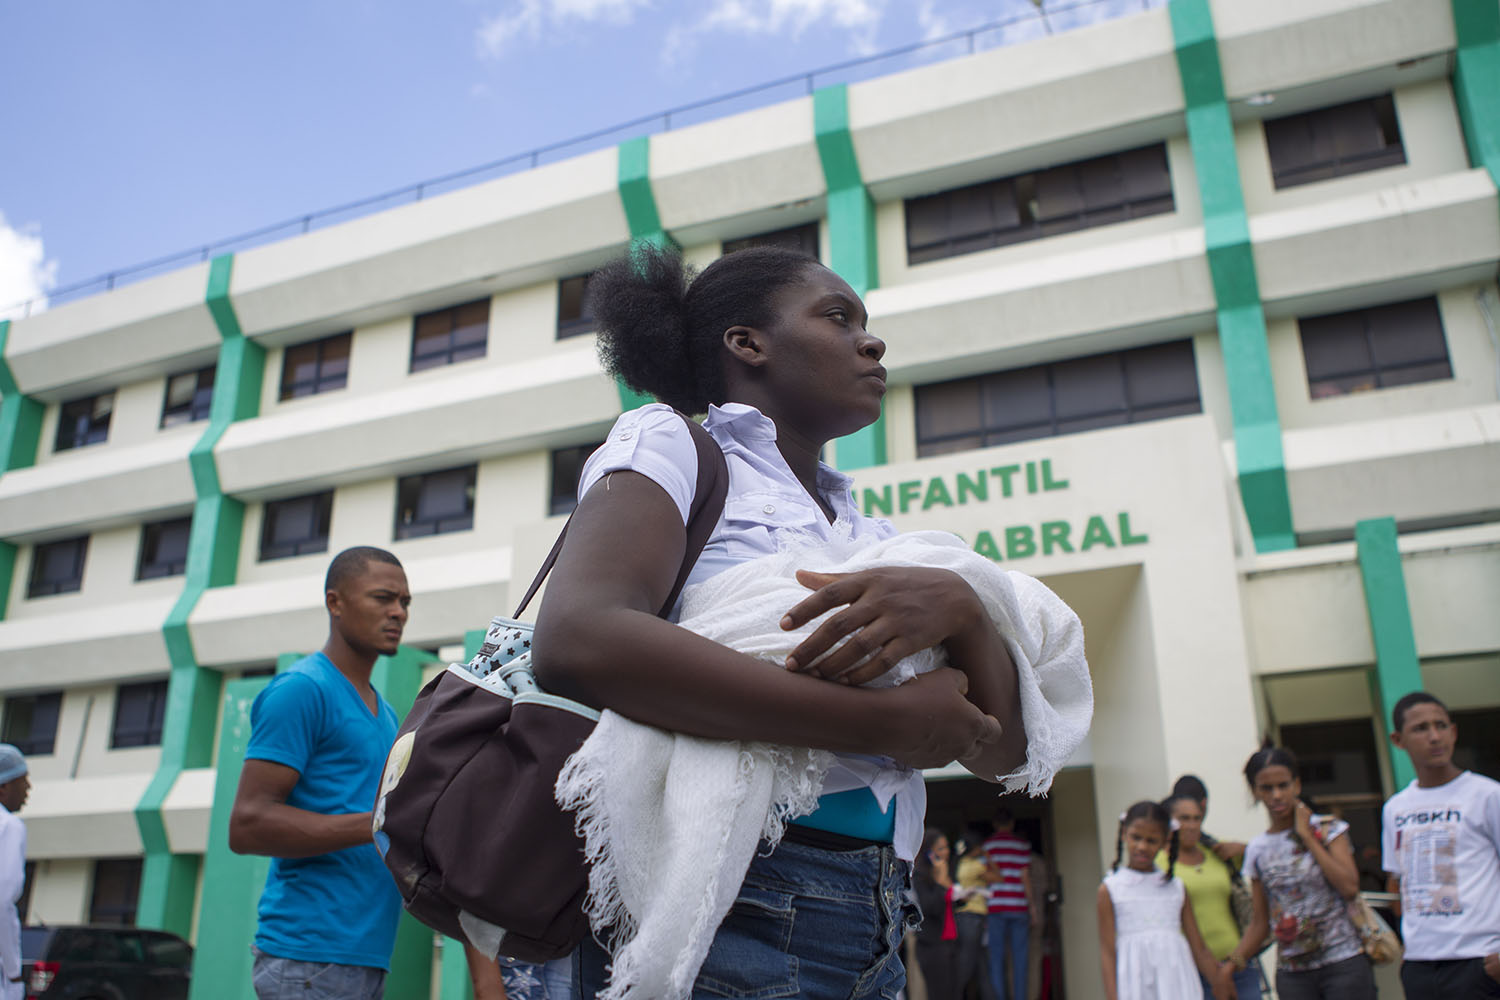 Ministra de salud dominicana asume en medio de protestas tras muerte de 11 niños